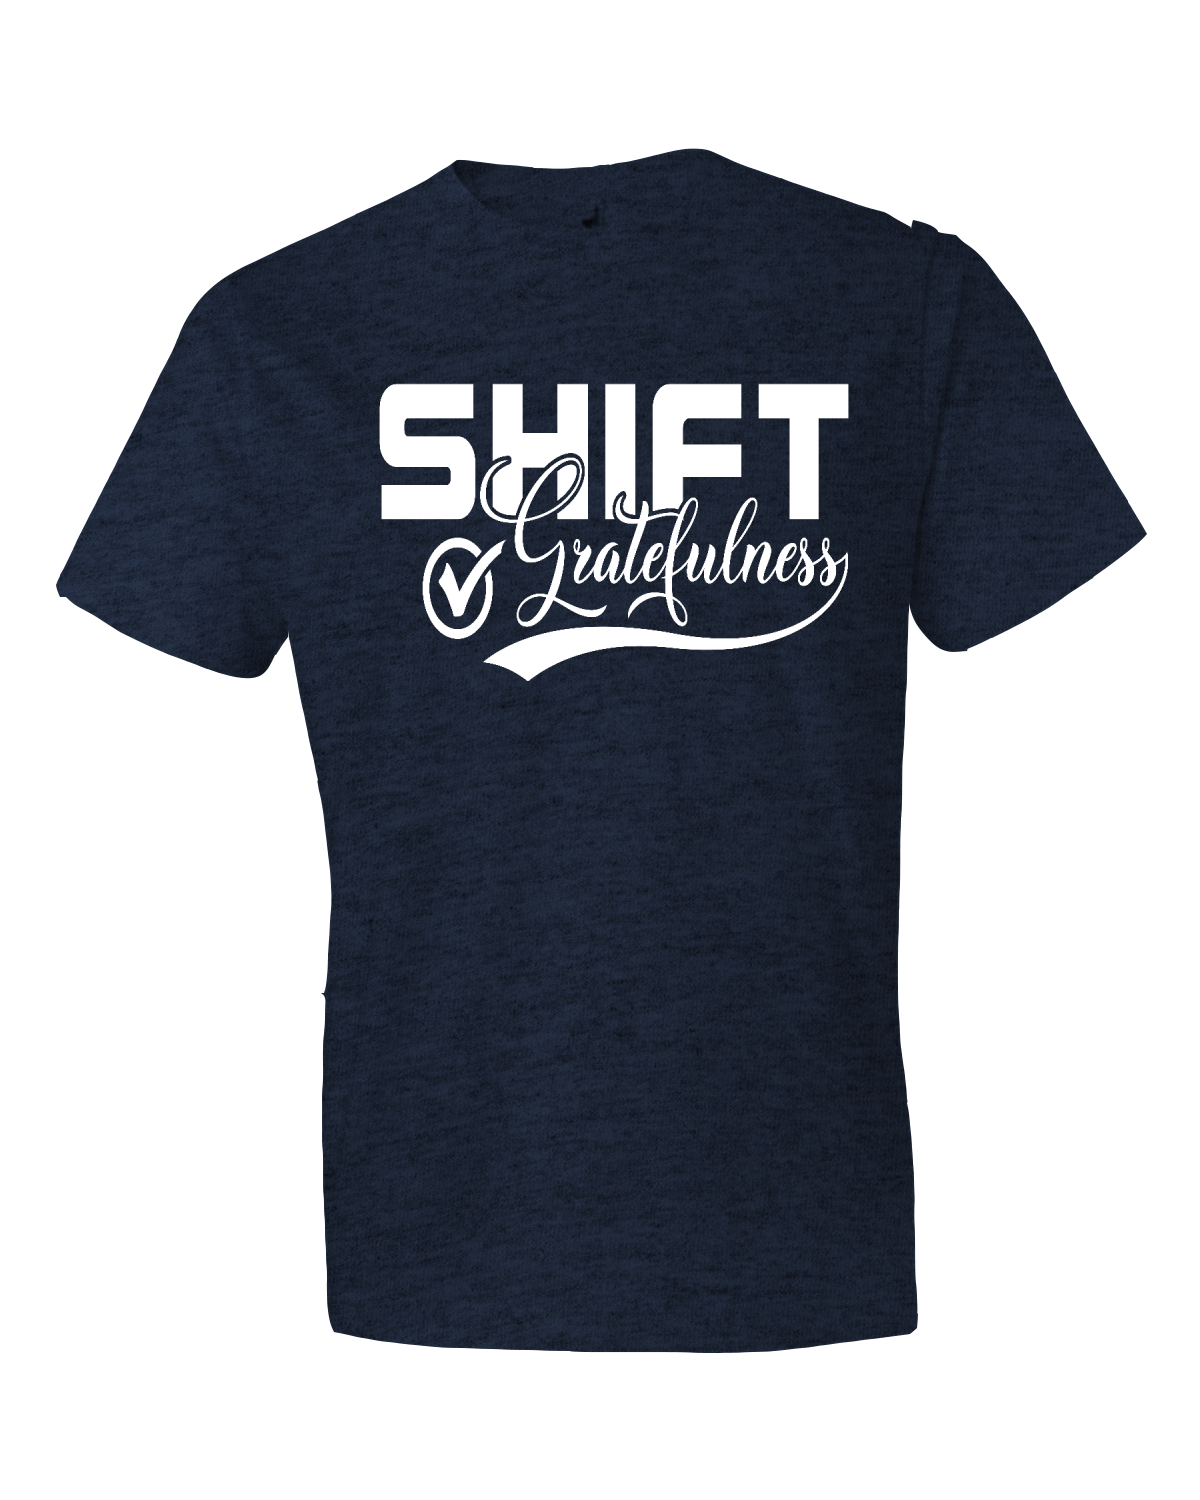 Shift Gratefulness Softstyle® Lightweight T-Shirt